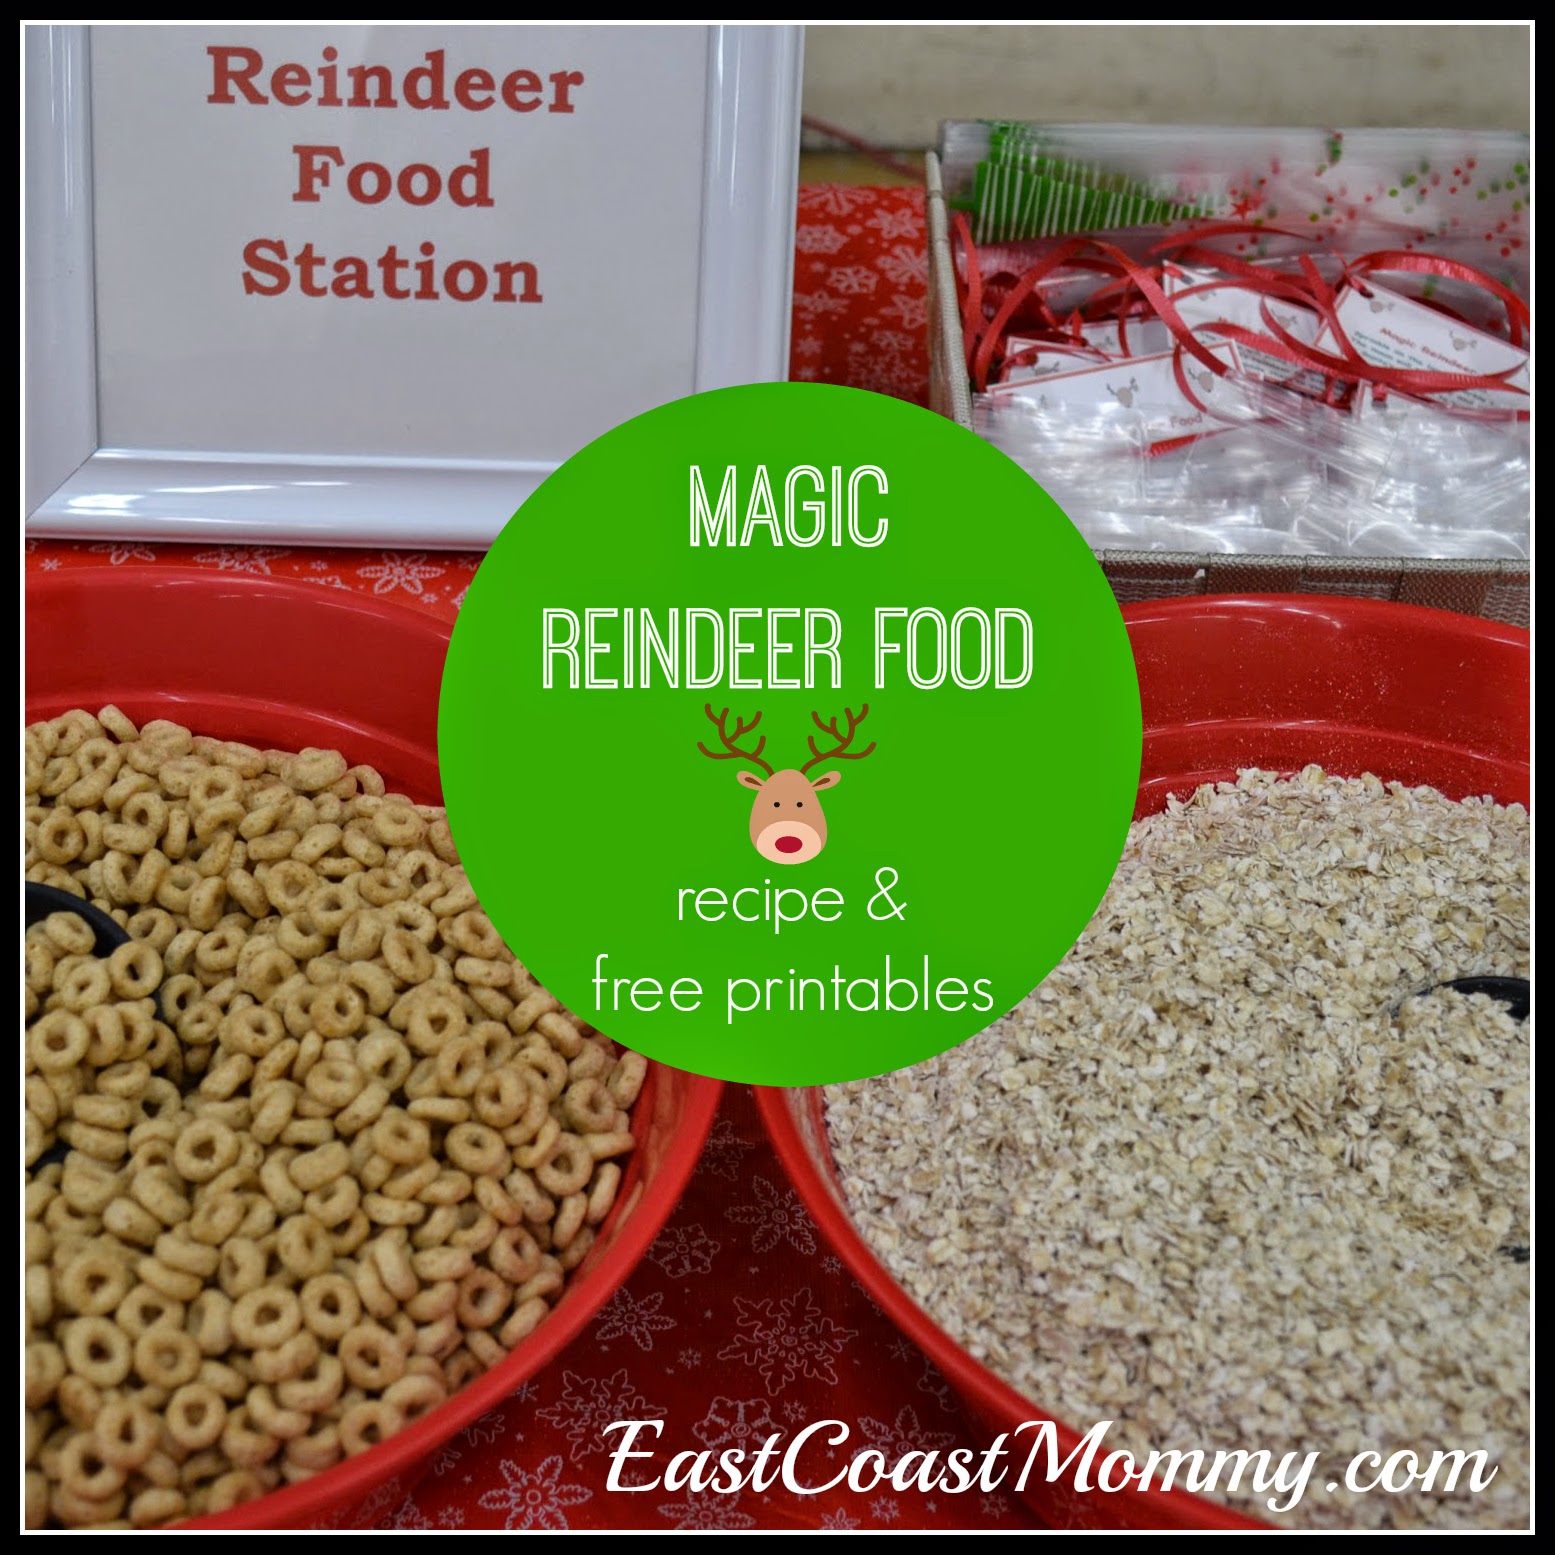 East Coast Mommy: Magic Reindeer Food